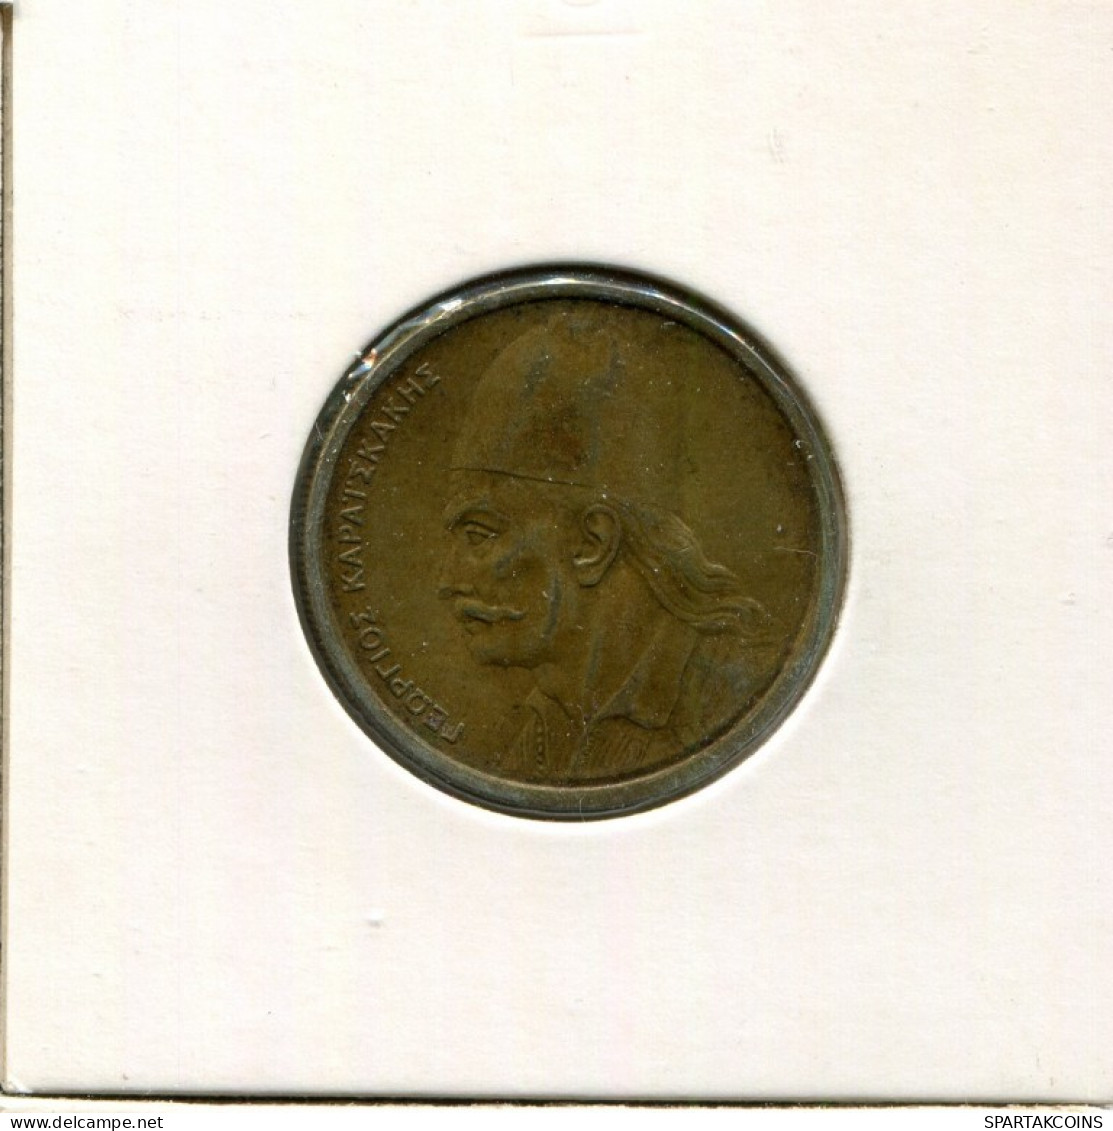 2 DRACHMES 1976 GREECE Coin #AK371.U.A - Grèce